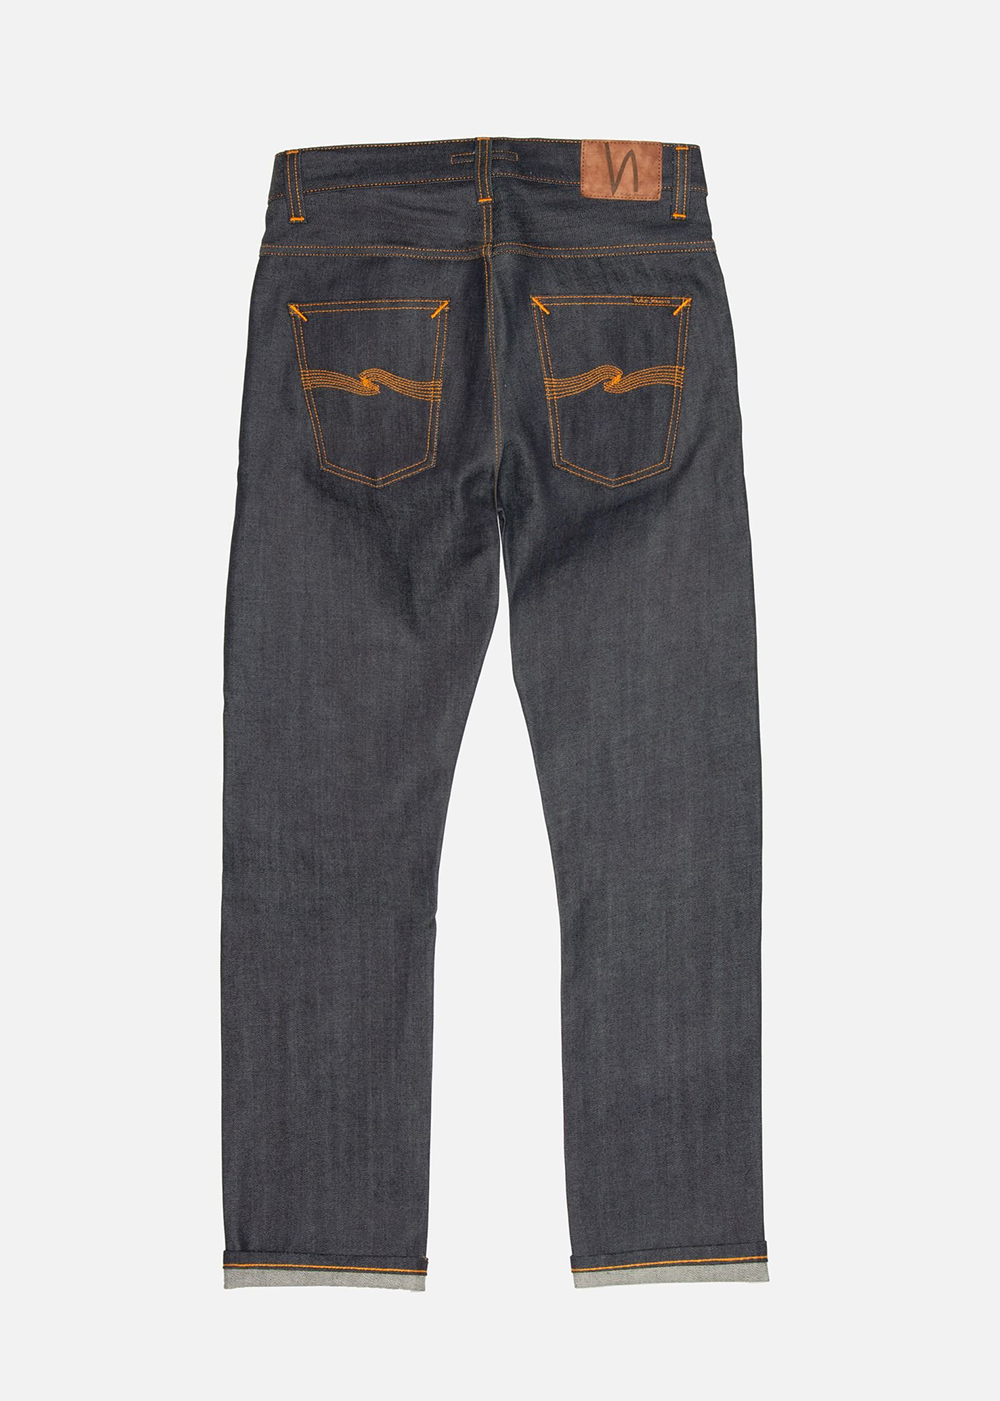 Grim Tim Dry Original Selvedge - Dry Original Selvedge Denim - Nudie Jeans Canada - Danali